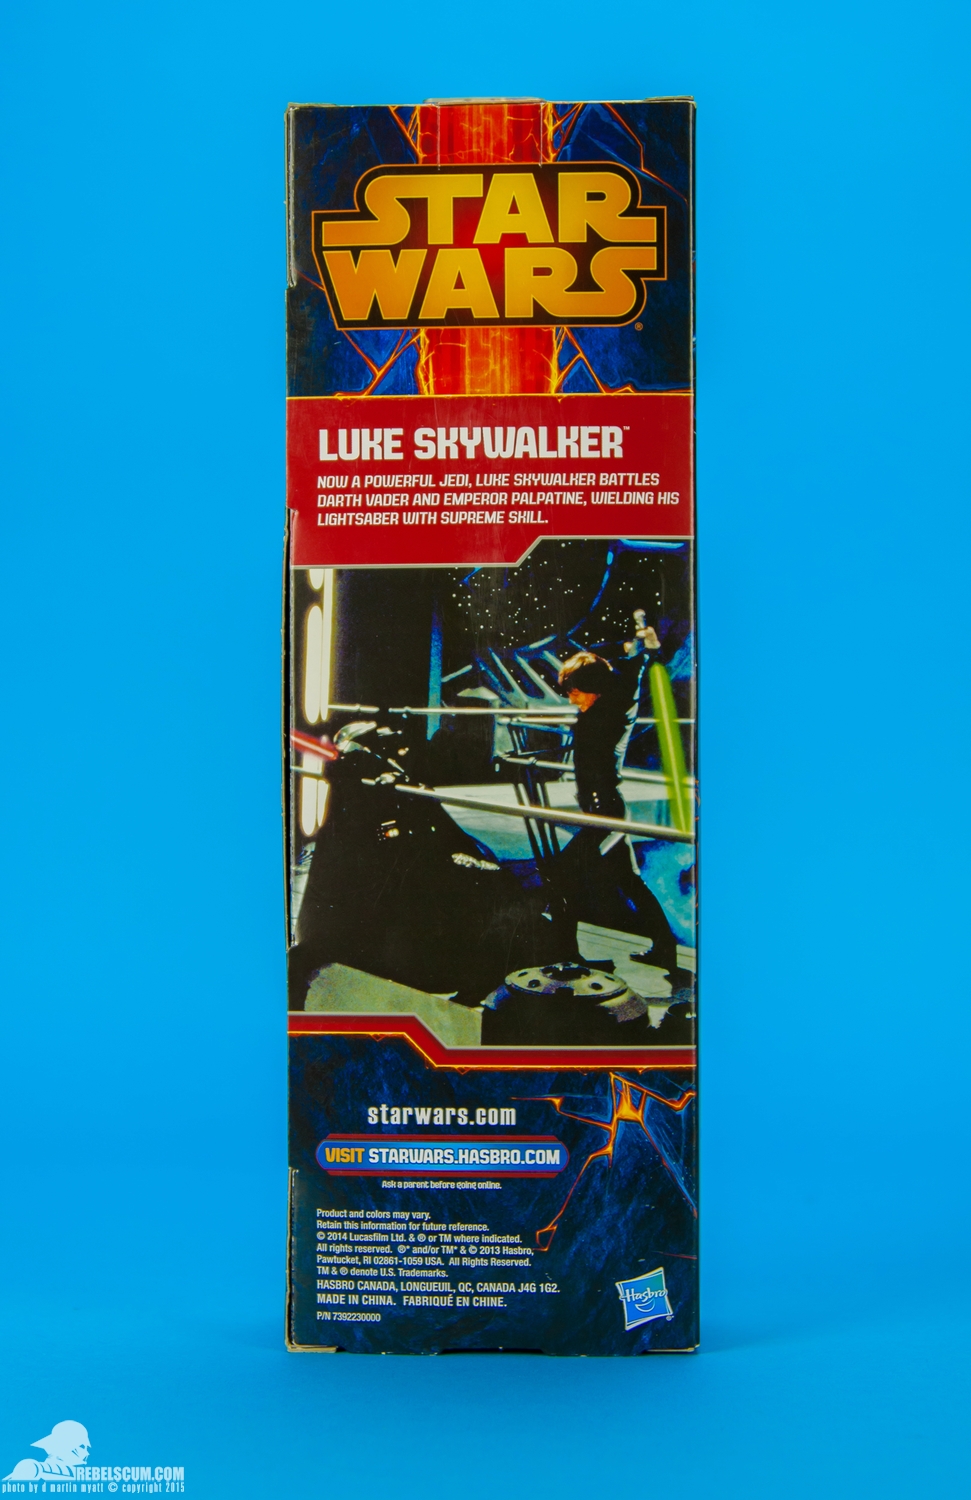 Luke-Skywalker-2014-Star-Wars-12-Inch-Figure-010.jpg